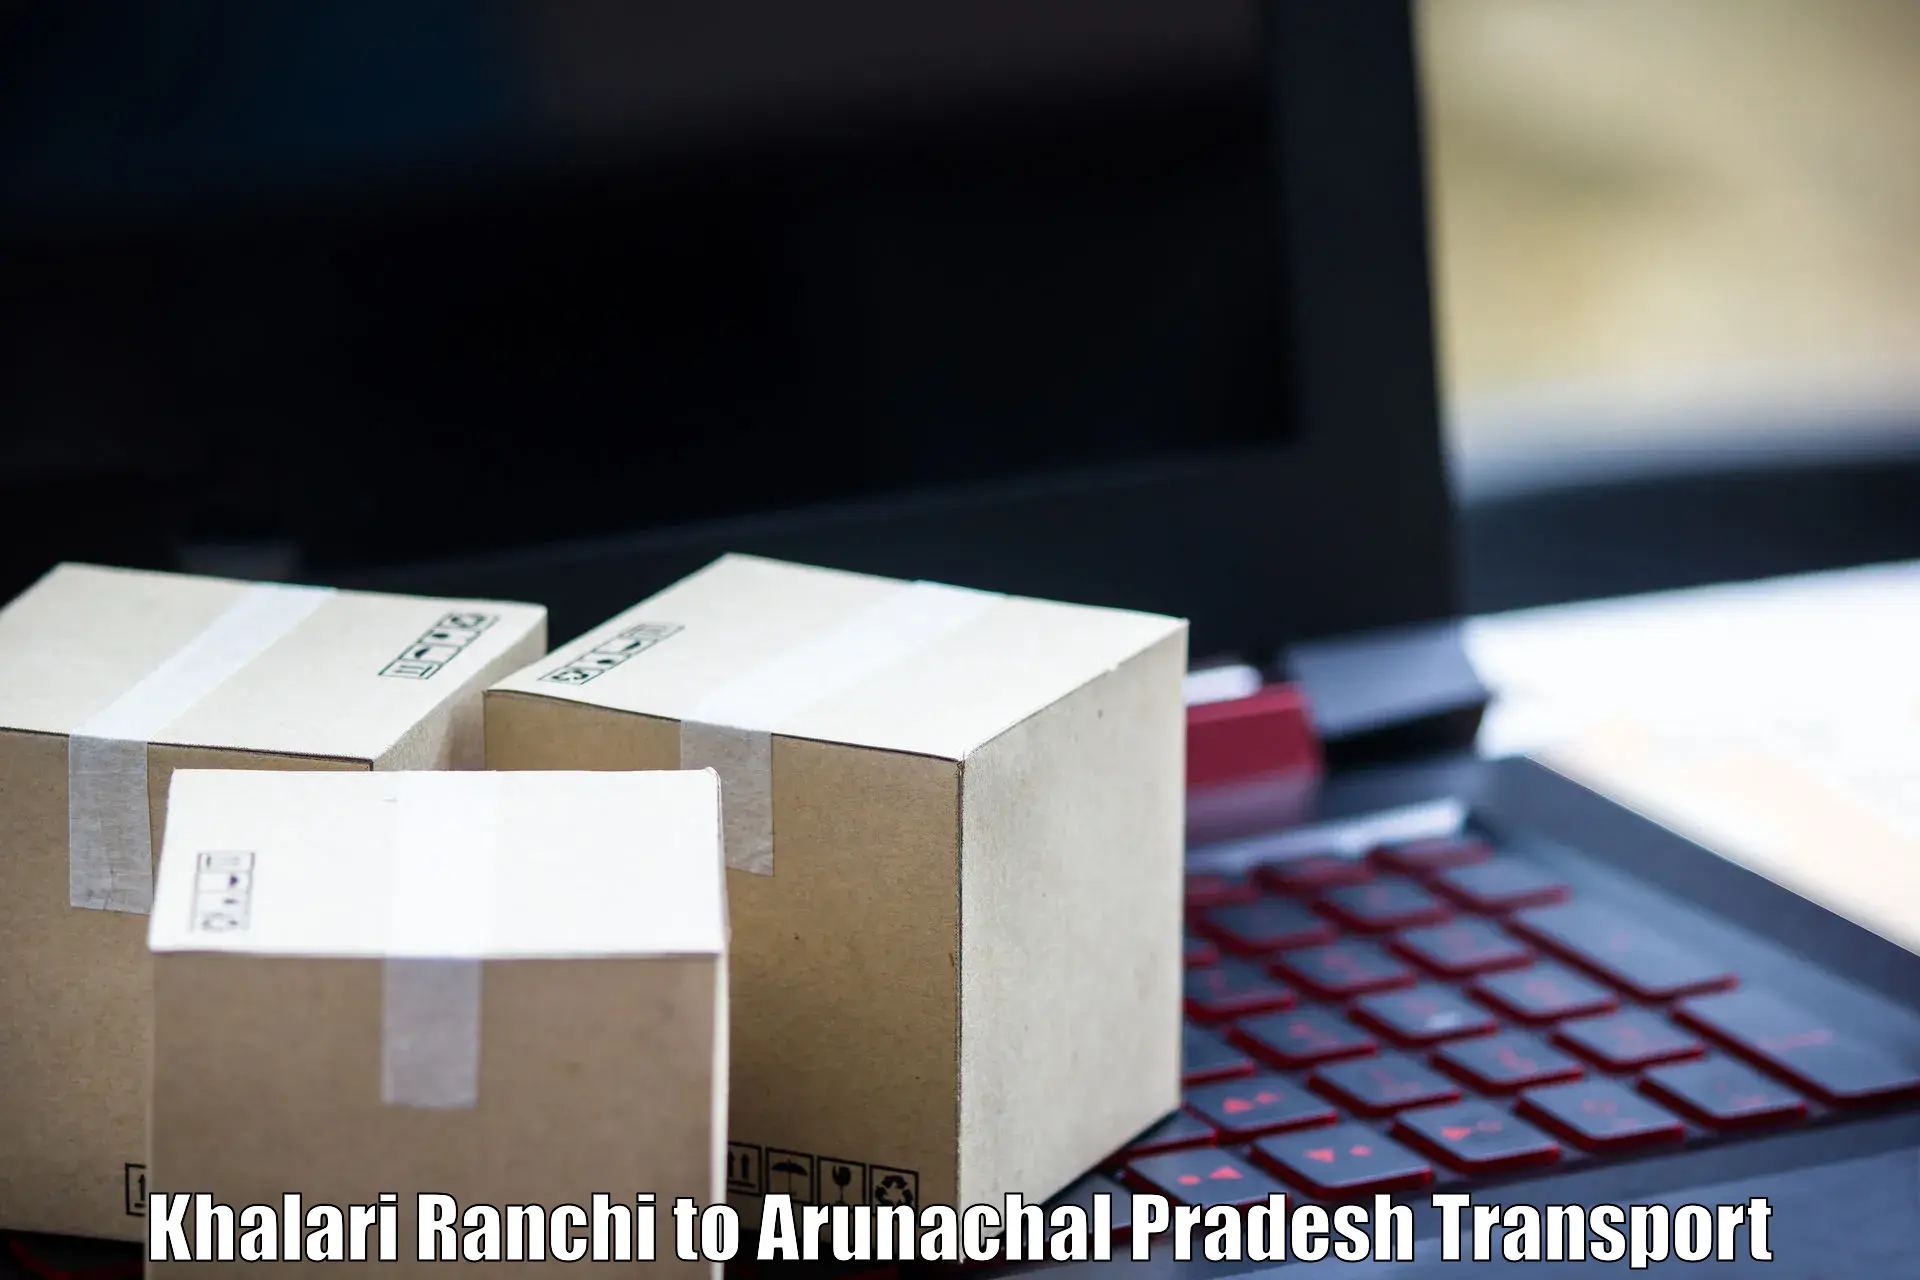 Delivery service Khalari Ranchi to Dirang